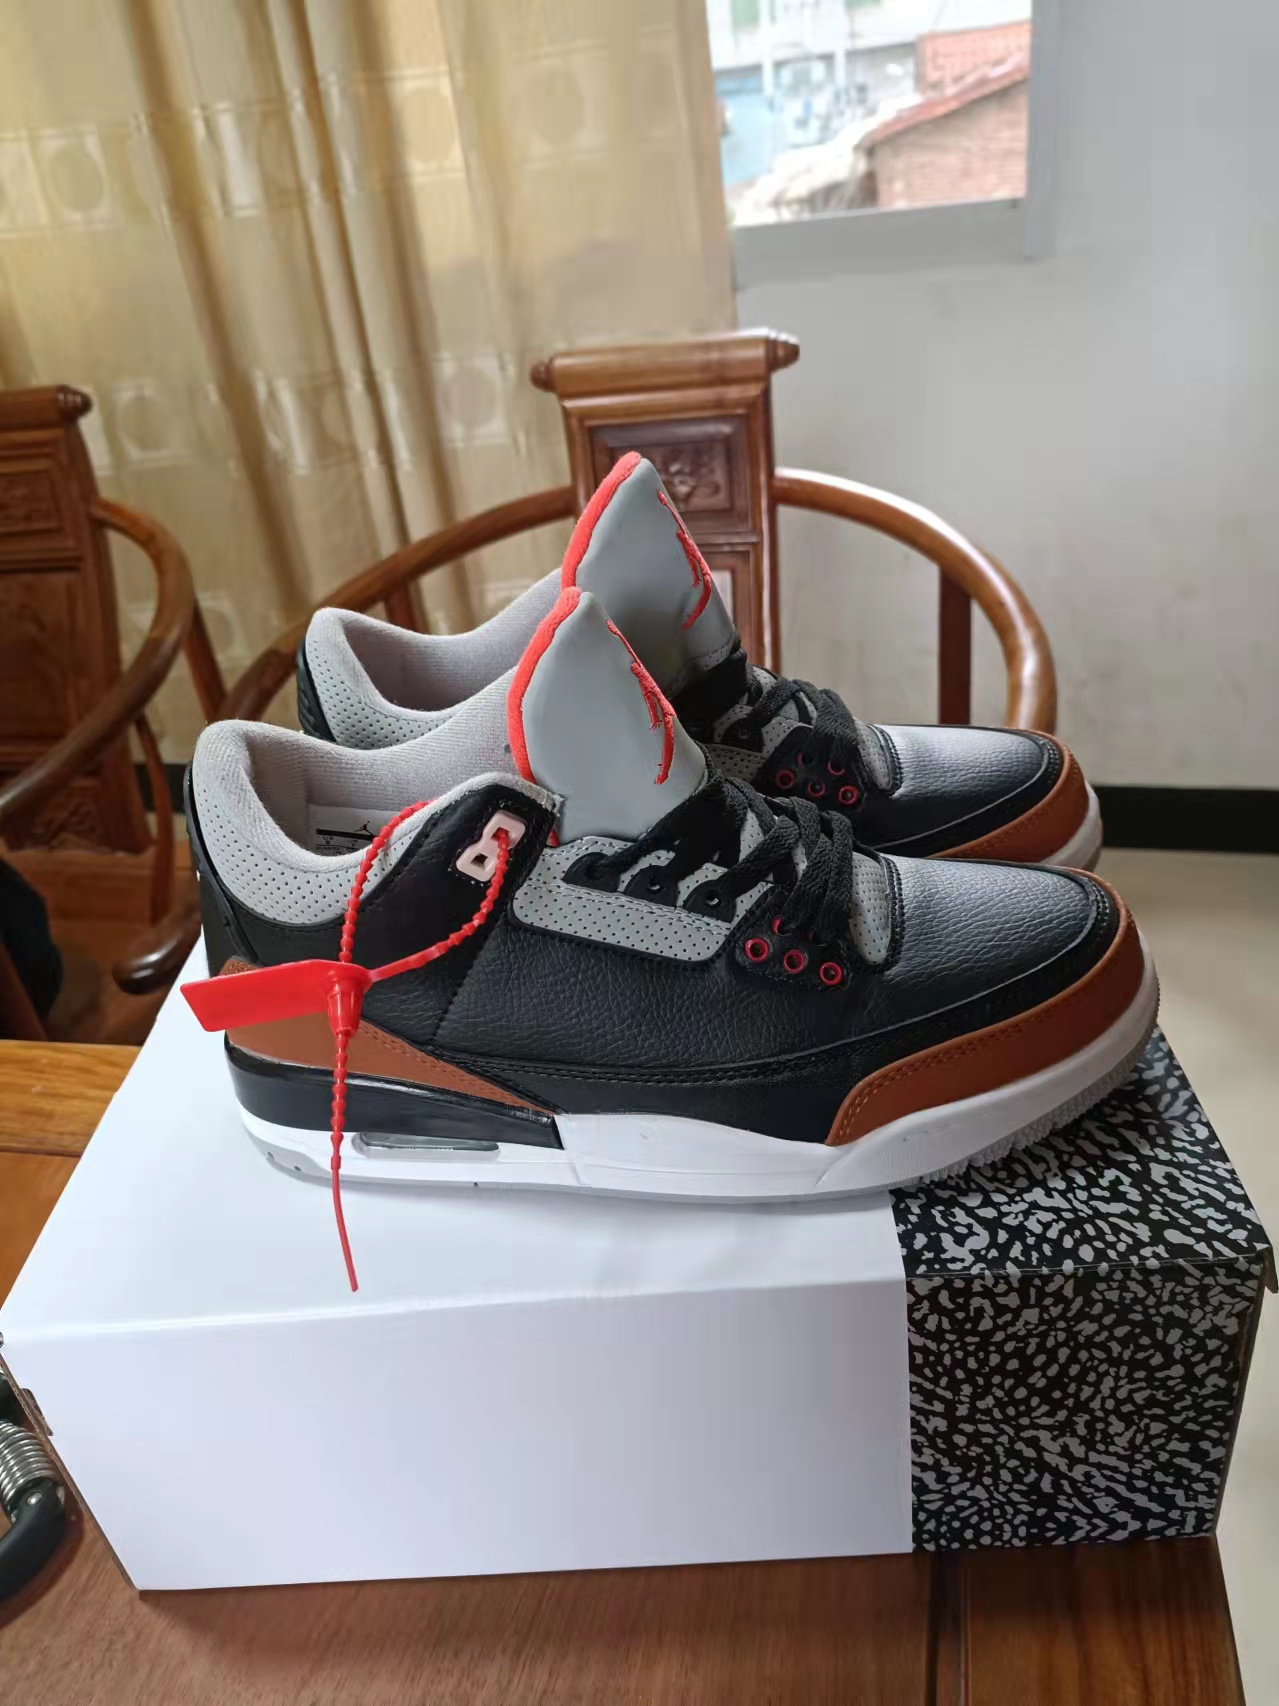 New 2022 Air Jordan 3 Retro Black Brown Grey Shoes